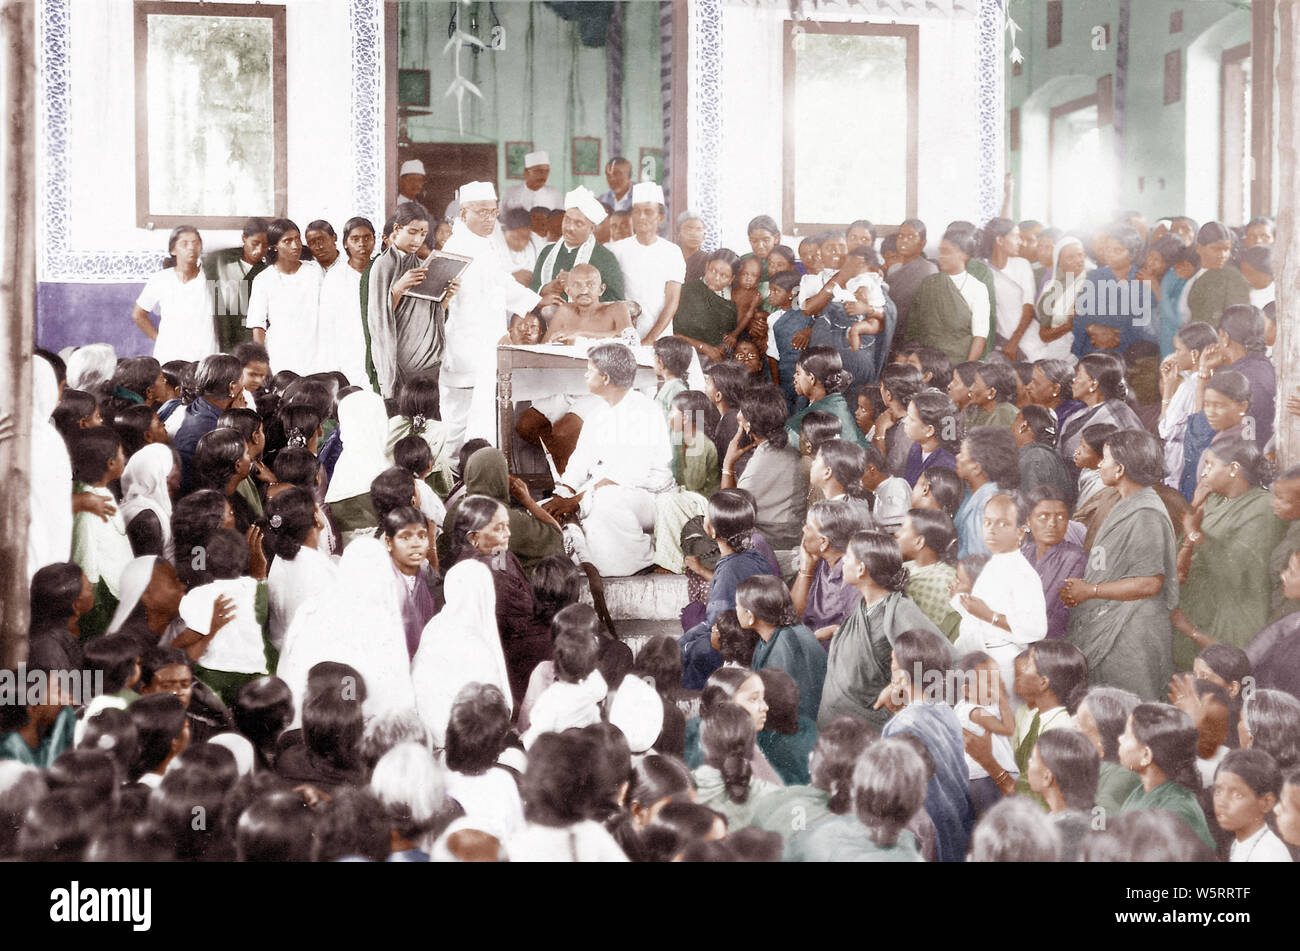 Mahatma Gandhi bei Frauentreffen Madras Chennai Tamil Nadu Indien Asien September 1921 Alter Jahrgang 1900s Bild Stockfoto